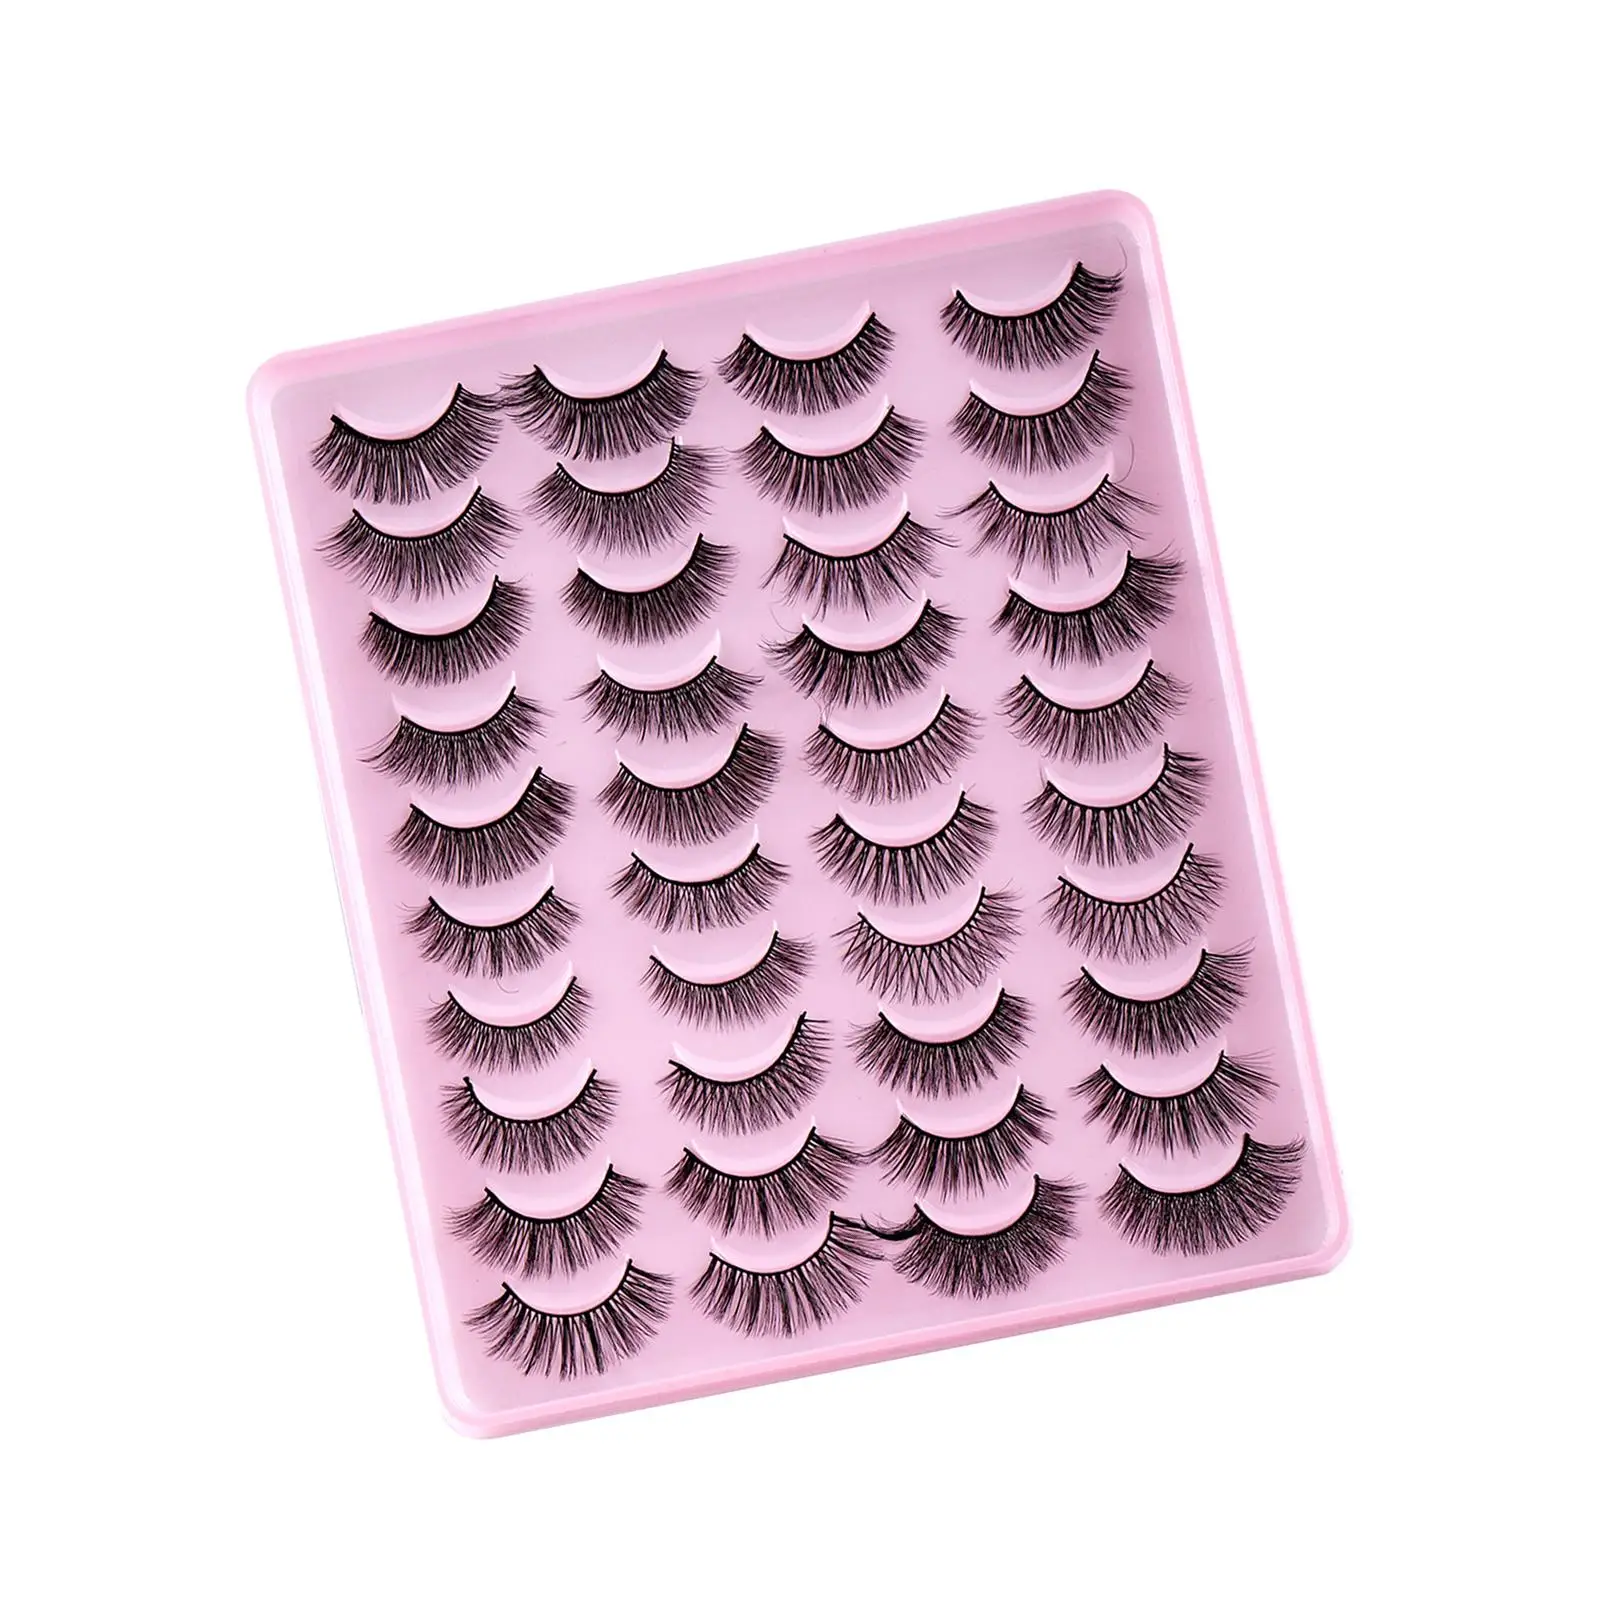 False Eyelashes Makeup Eyelashes Gorgeous 5D Volume (20 Pairs) Faux Eyelashes for Woman Costume Festival Girls Valentines